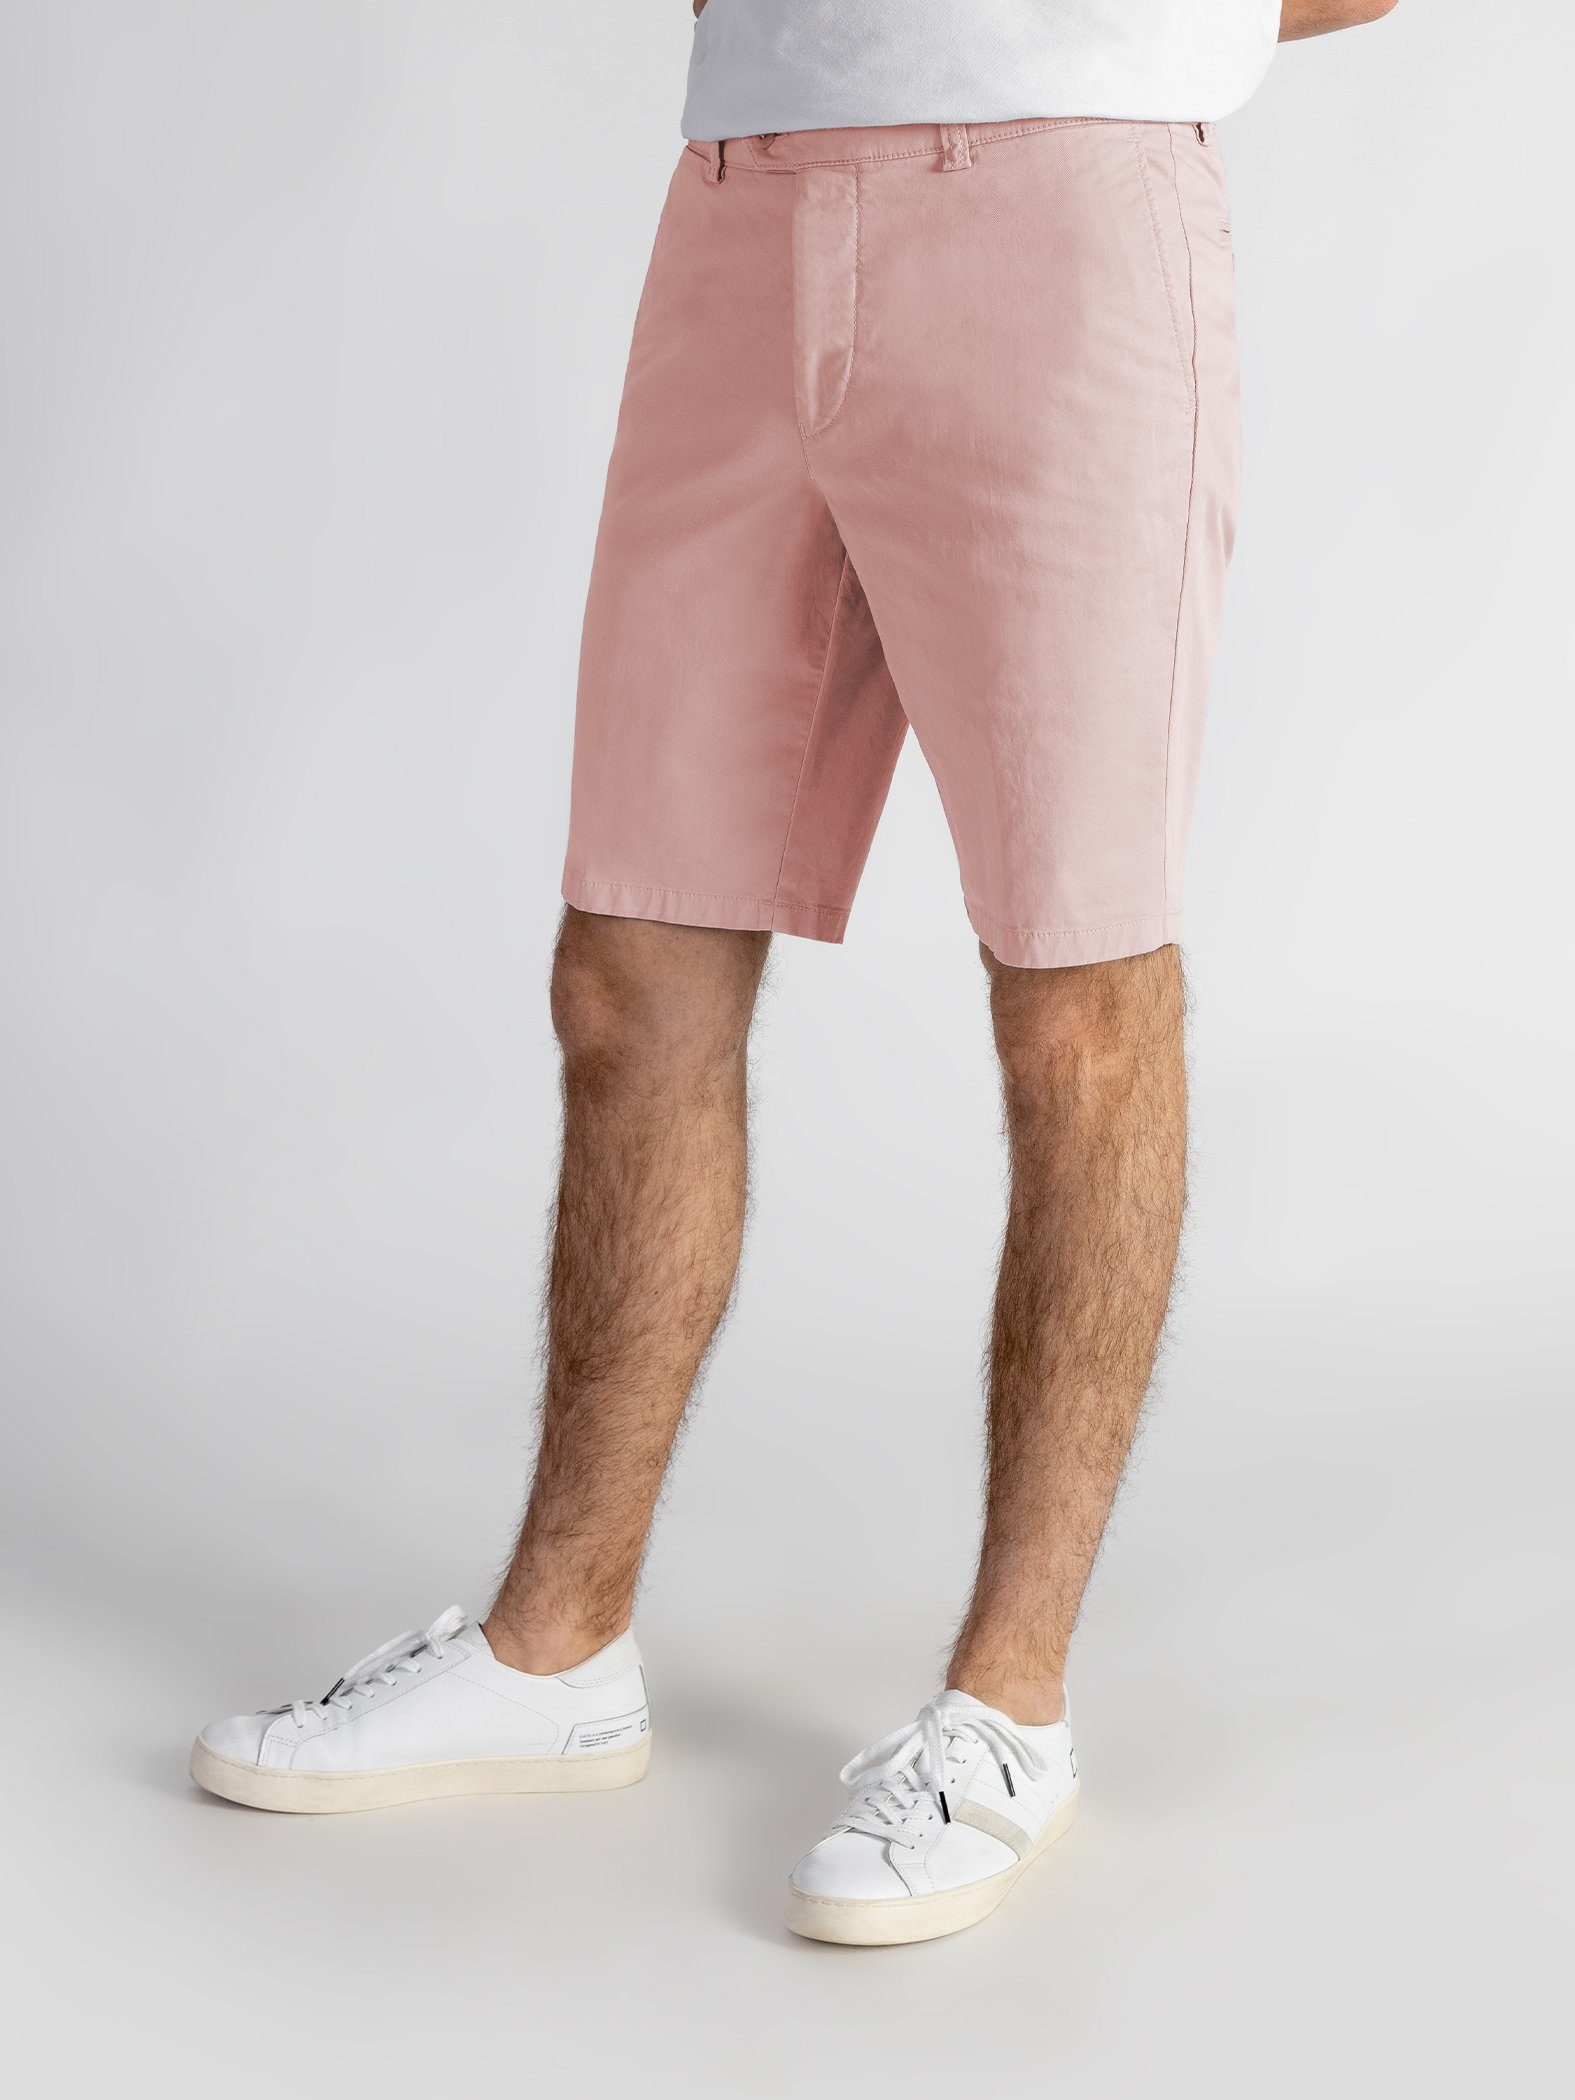 TwoMates Shorts Shorts Farbauswahl, elastischem GOTS-zertifiziert mit Bund, rosa